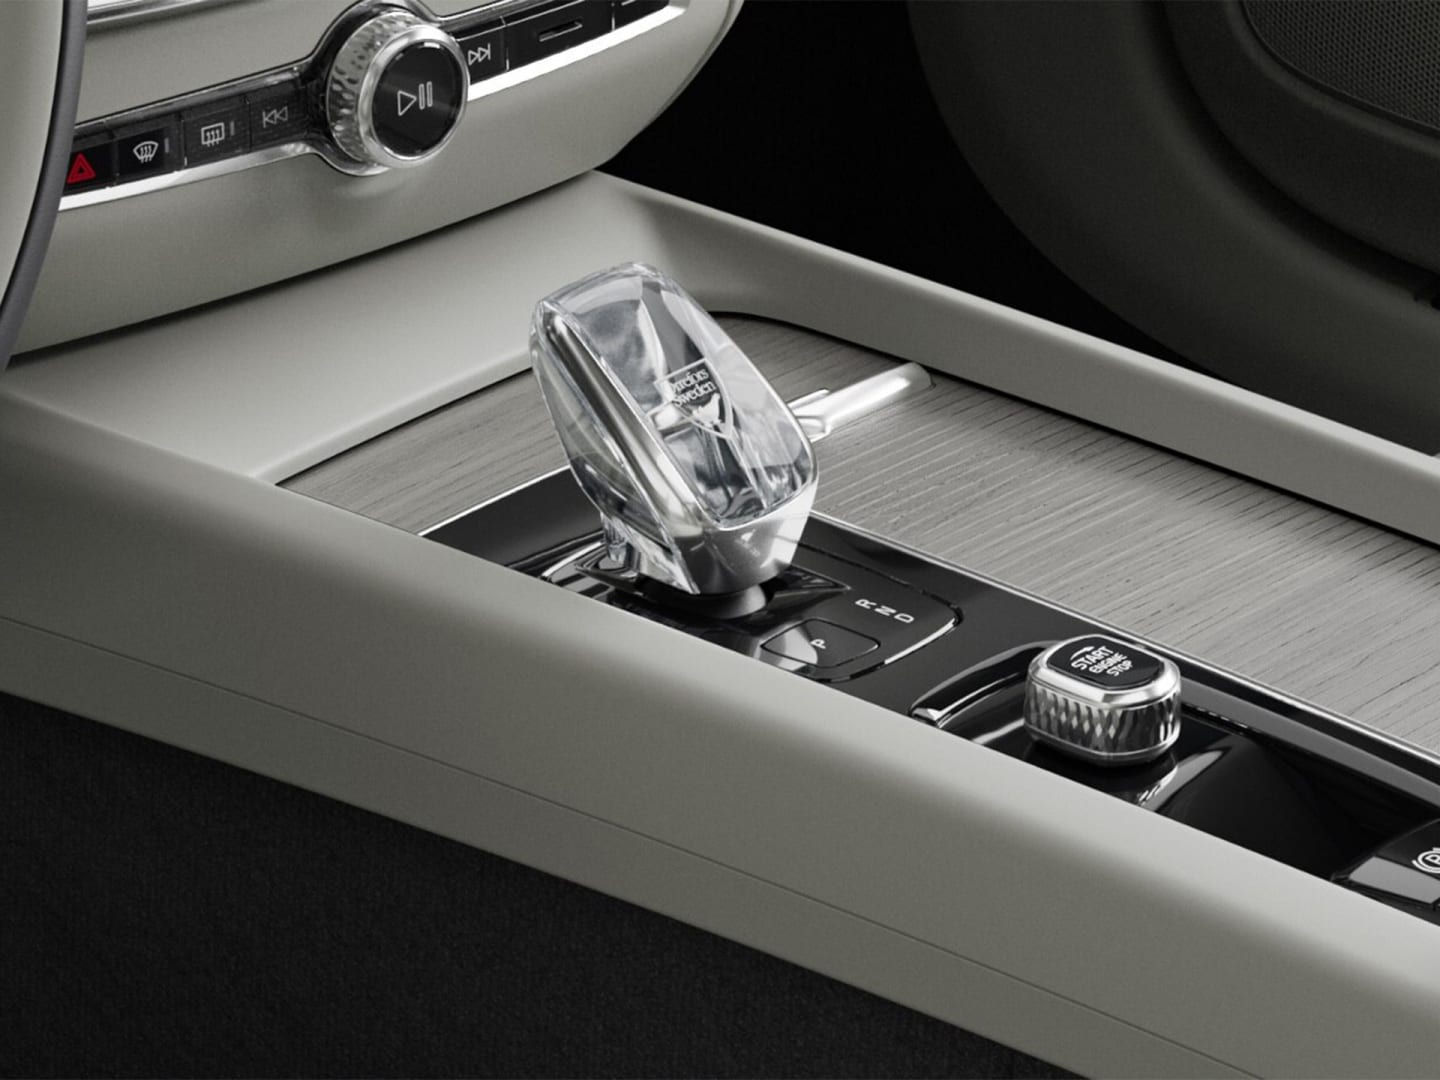 Bouton de démarrage et levier de vitesse en cristal dans la console centrale ornée de bois du Volvo V60 micro-hybride.